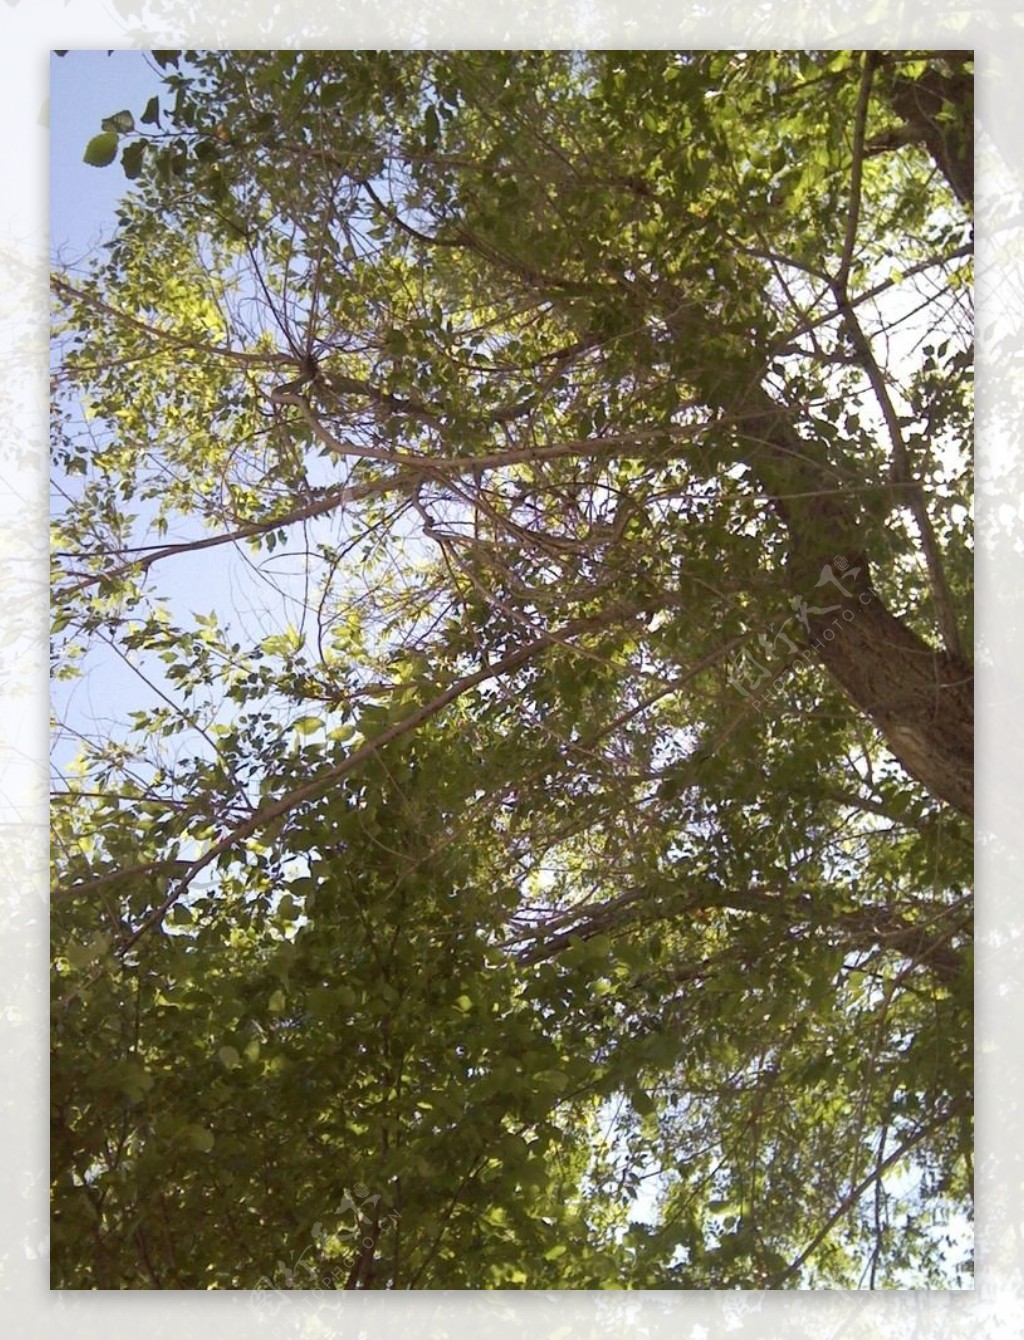 大树蓝天图片